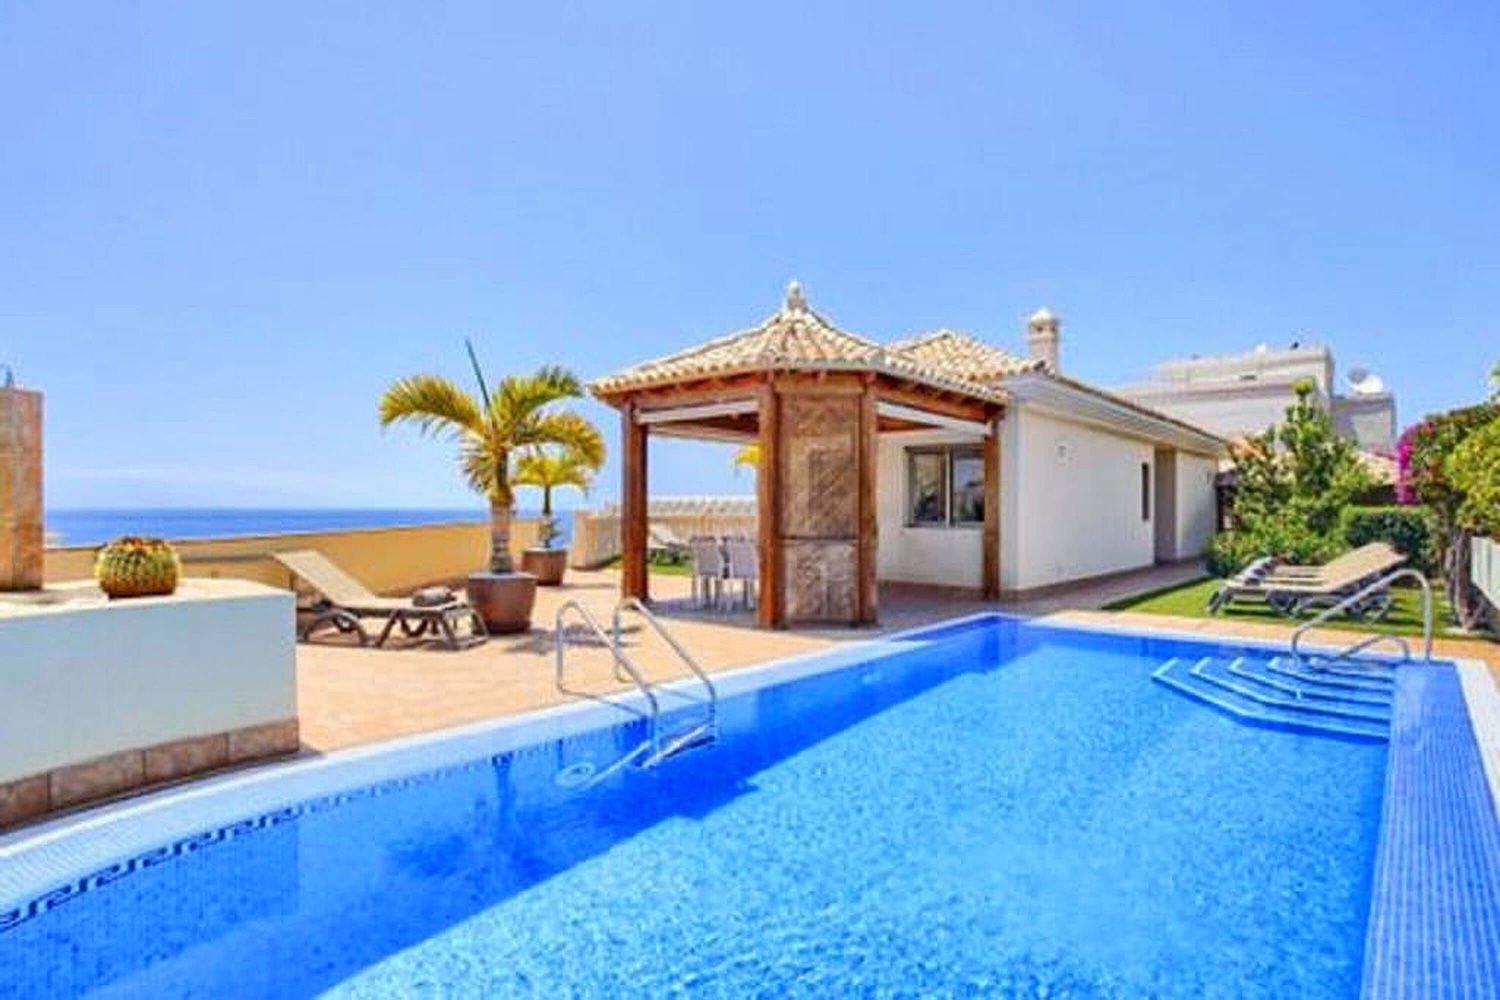 Unabhängige, moderne, geräumige und helle Villa in Puerto de Santiago mit herrlicher Aussicht auf das Meer.